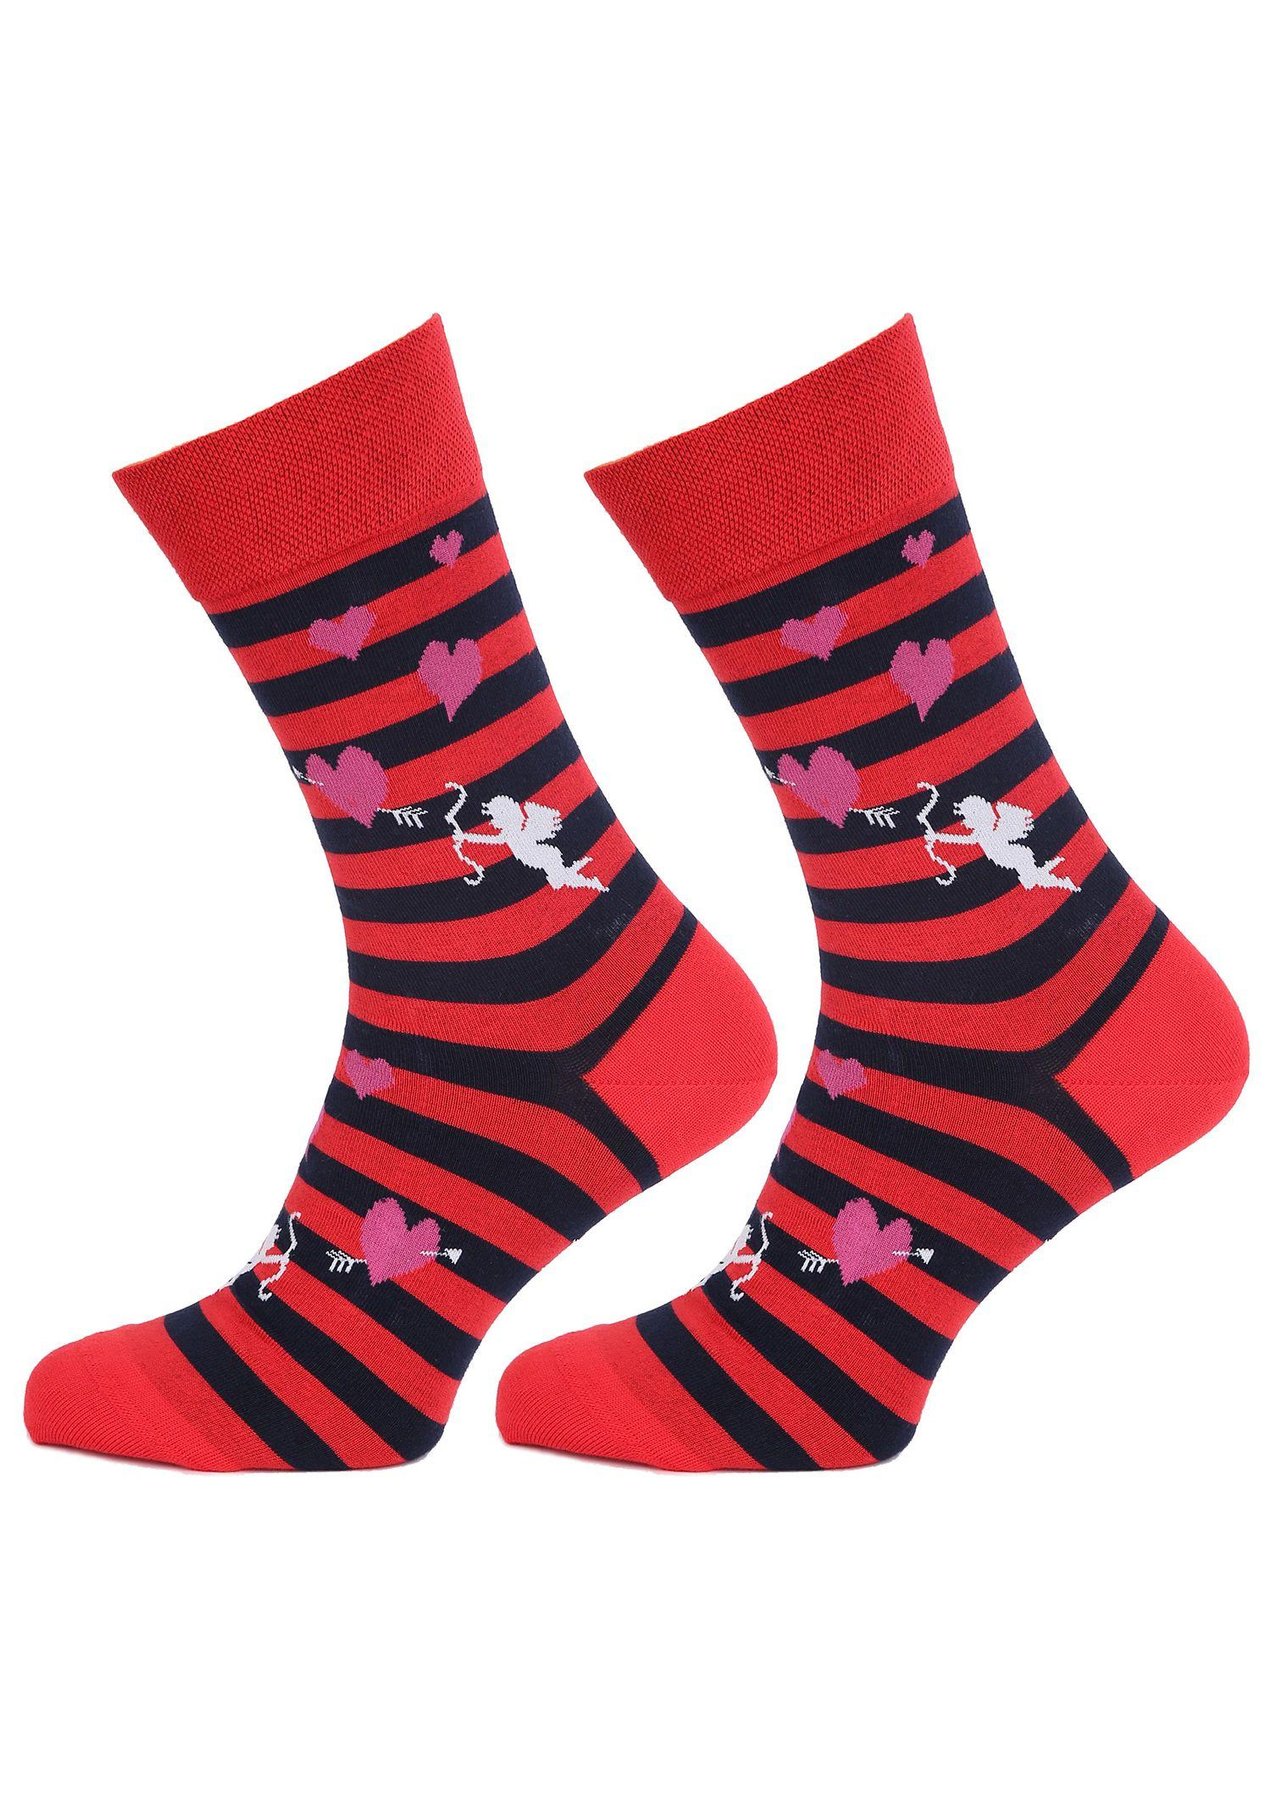 Шкарпетки Marilyn Amore Love, 41-43, red